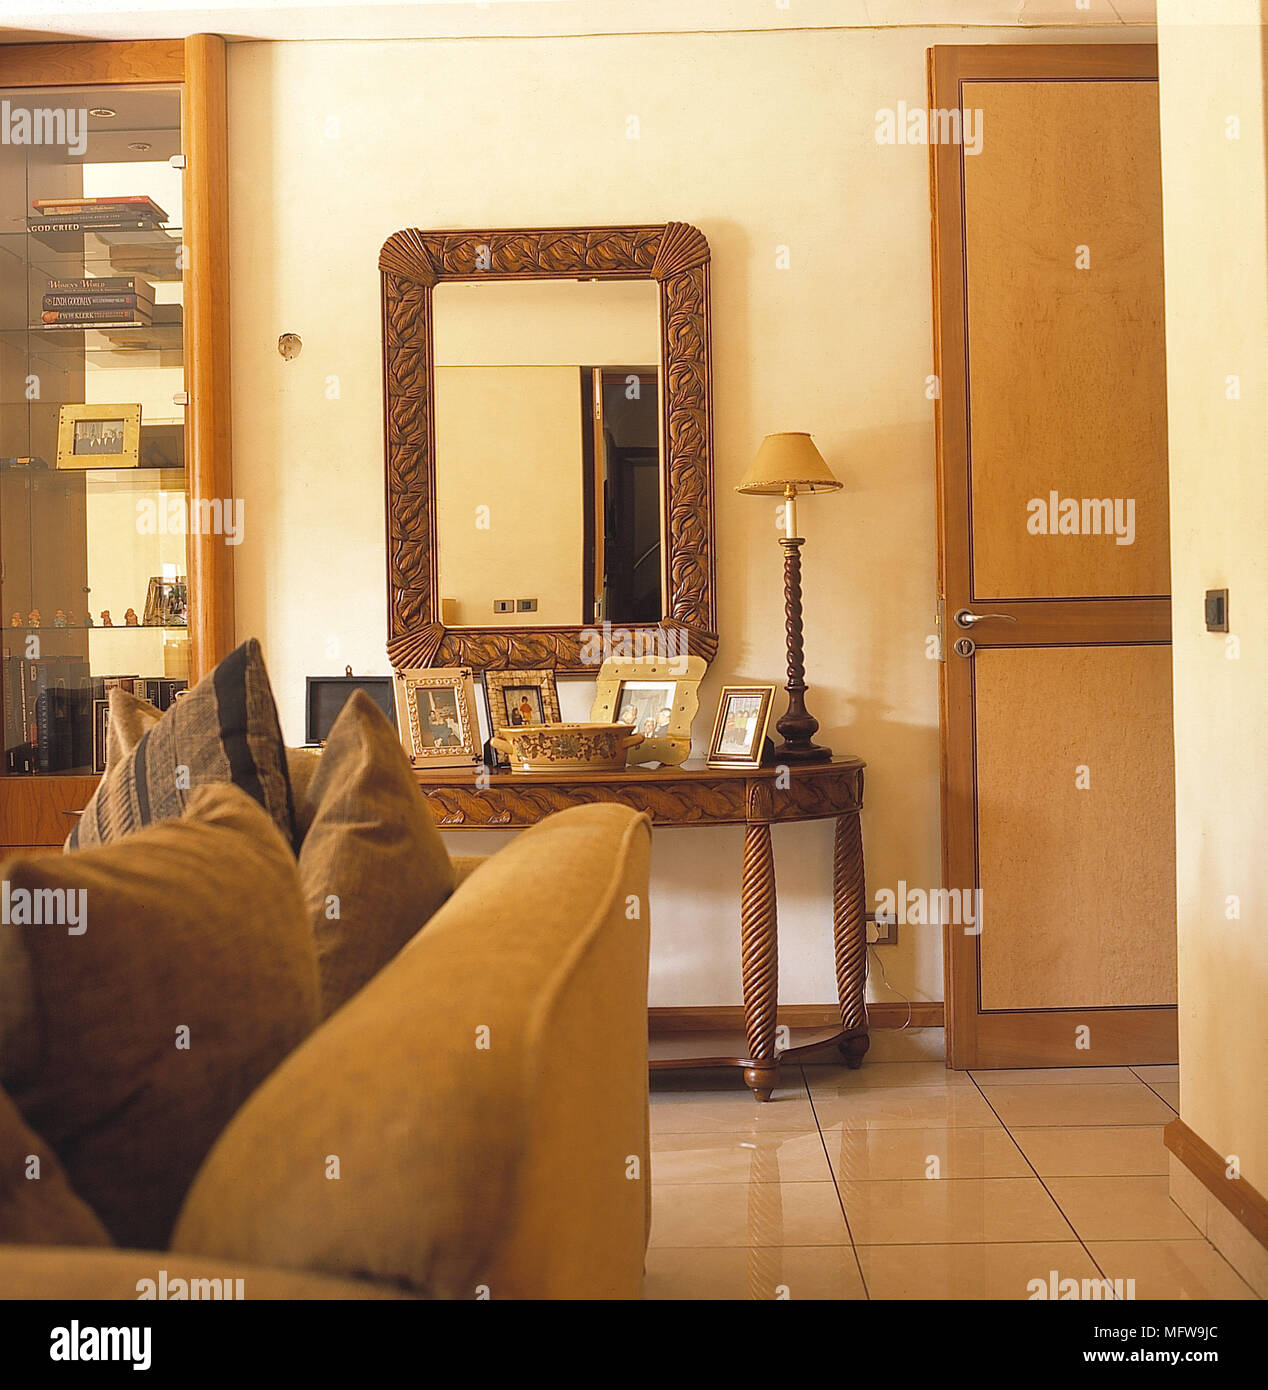 La stanza di seduta dettaglio pareti bianche pavimento piastrellato oro divano cuscini specchio lato intagliato lampada da tavolo interni camere vetro unità display libri fotografie p Foto Stock